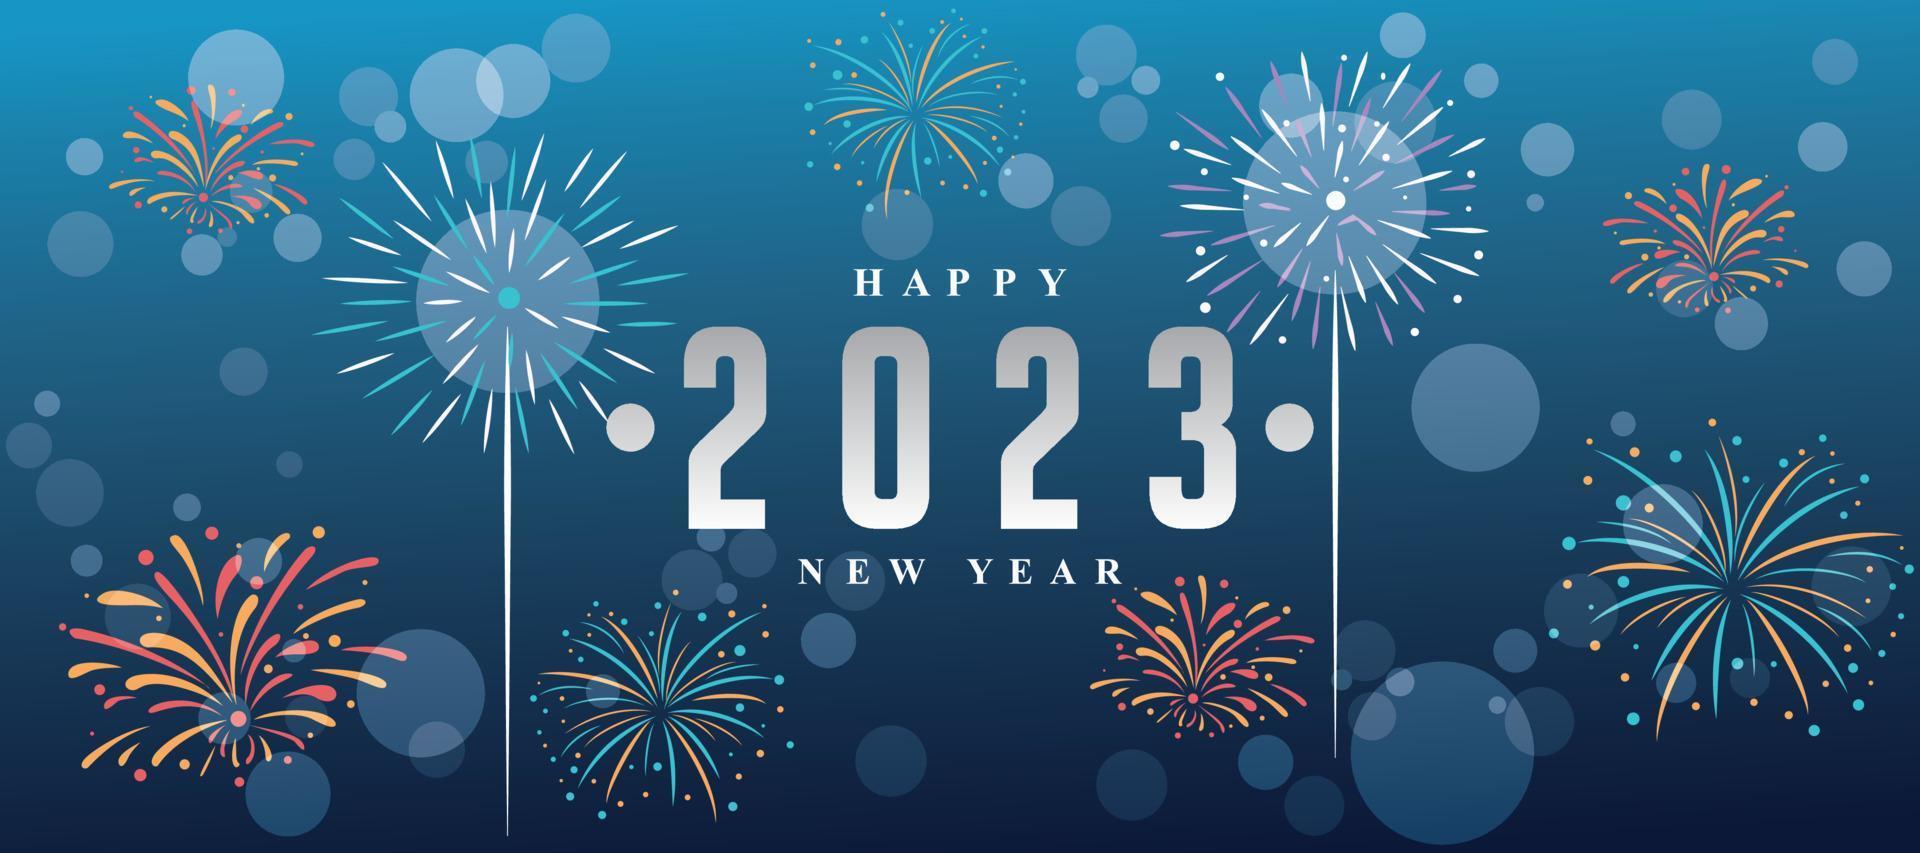 fond de nouvel an 2023 avec feux d'artifice et nuances bleues vecteur